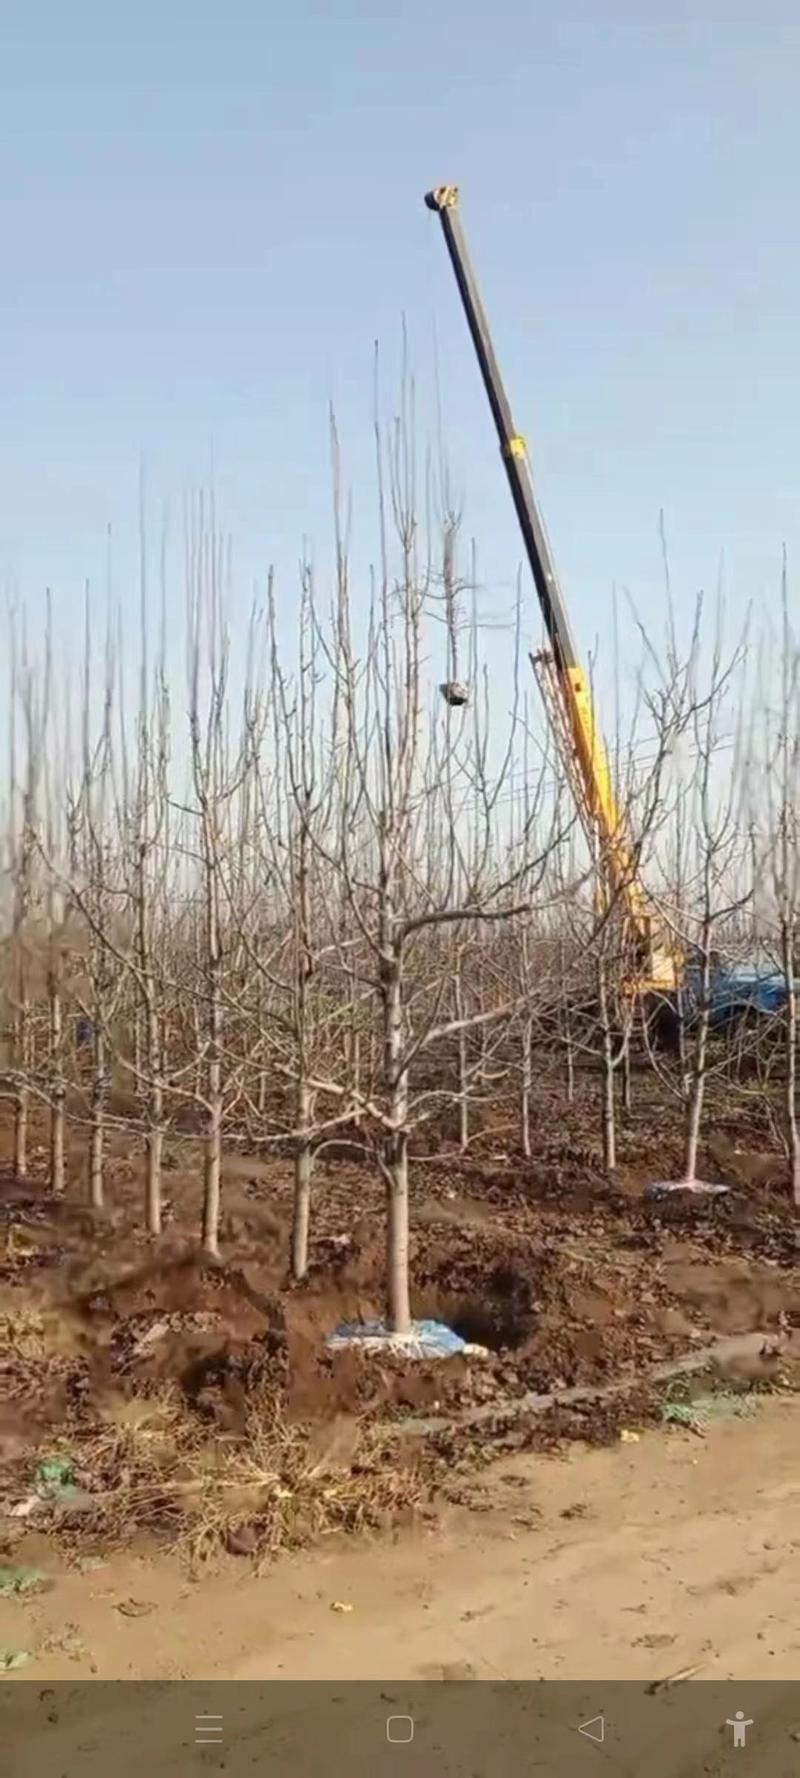 苹果树苗各规格齐全、绿化工程、占地裸根、土球均可操作